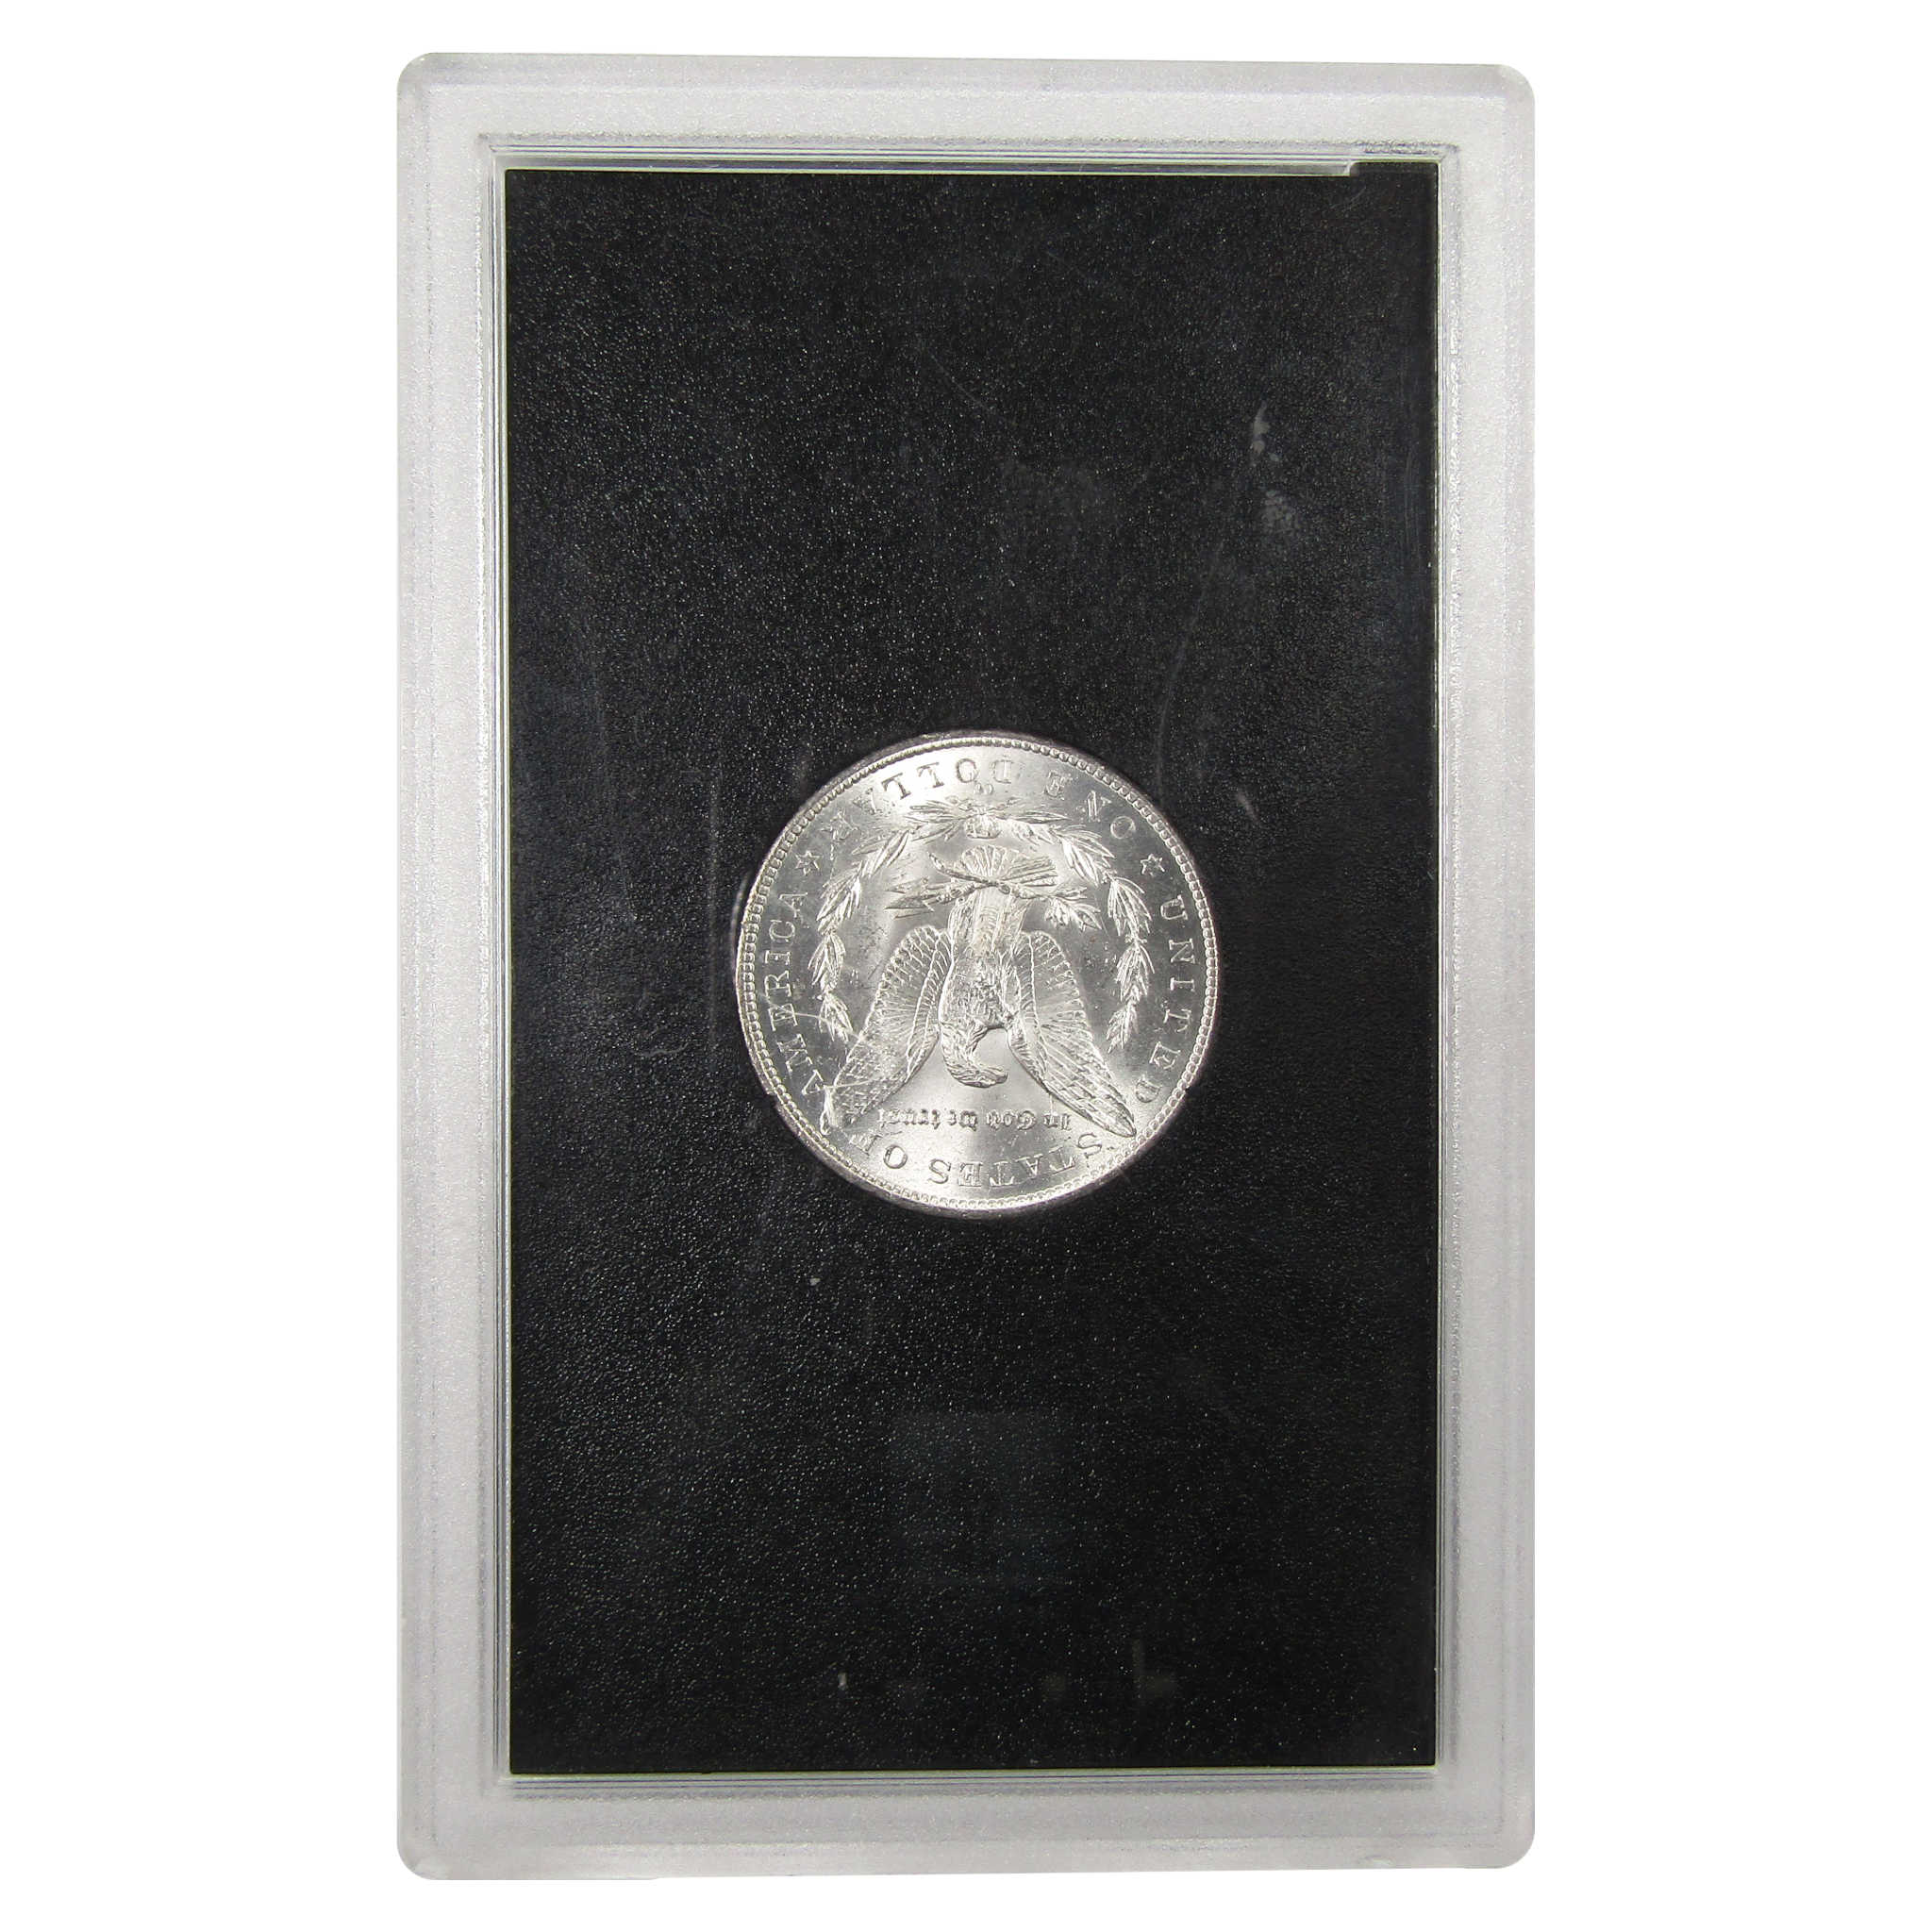 1882 CC GSA Morgan Dollar BU Uncirculated Silver $1 Coin SKU:I9865 - Morgan coin - Morgan silver dollar - Morgan silver dollar for sale - Profile Coins &amp; Collectibles